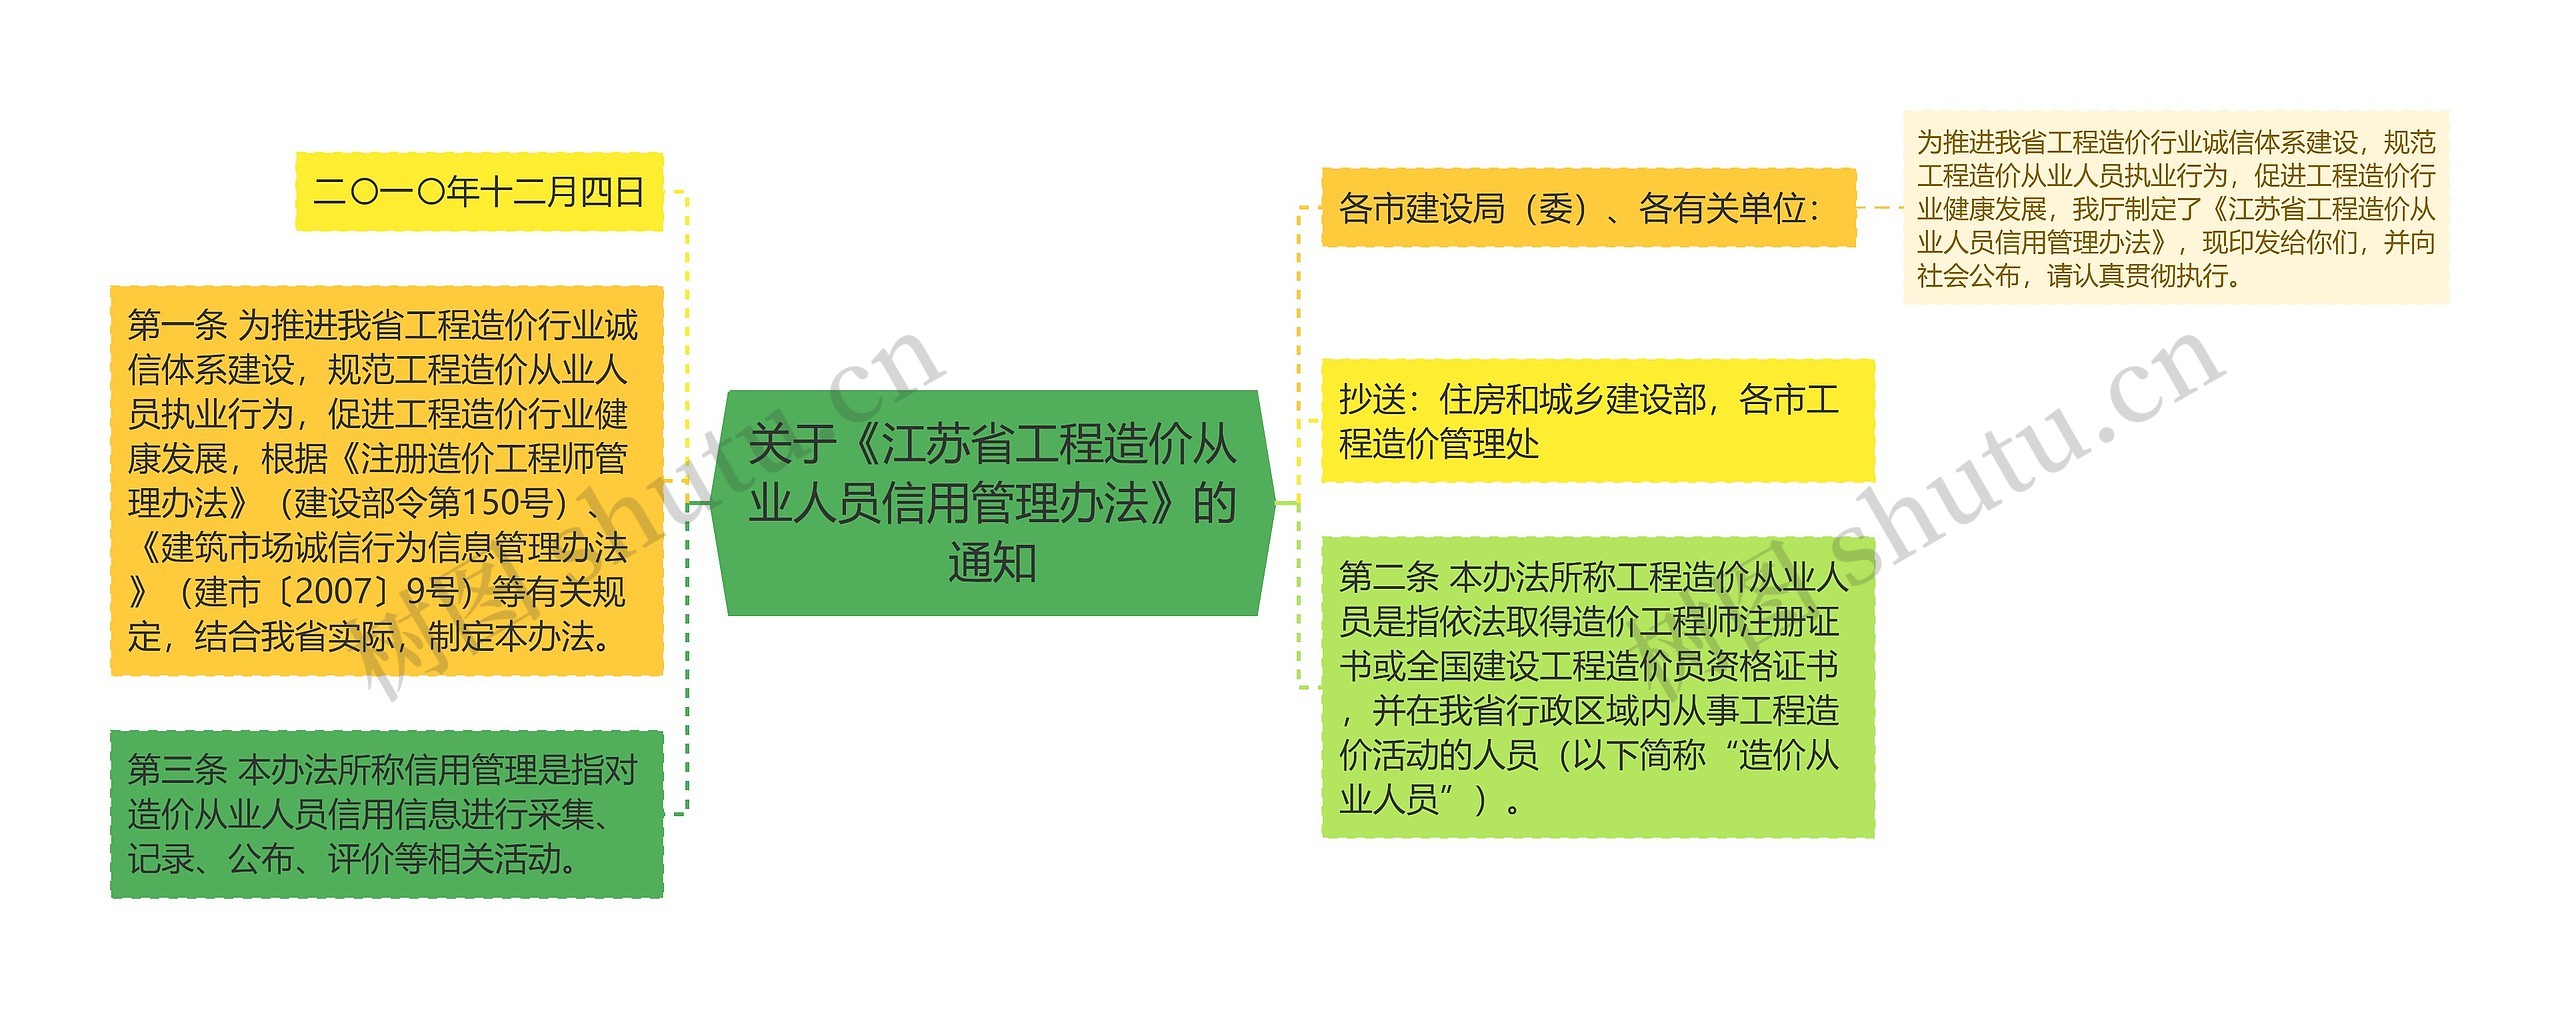 关于《江苏省工程造价从业人员信用管理办法》的通知思维导图